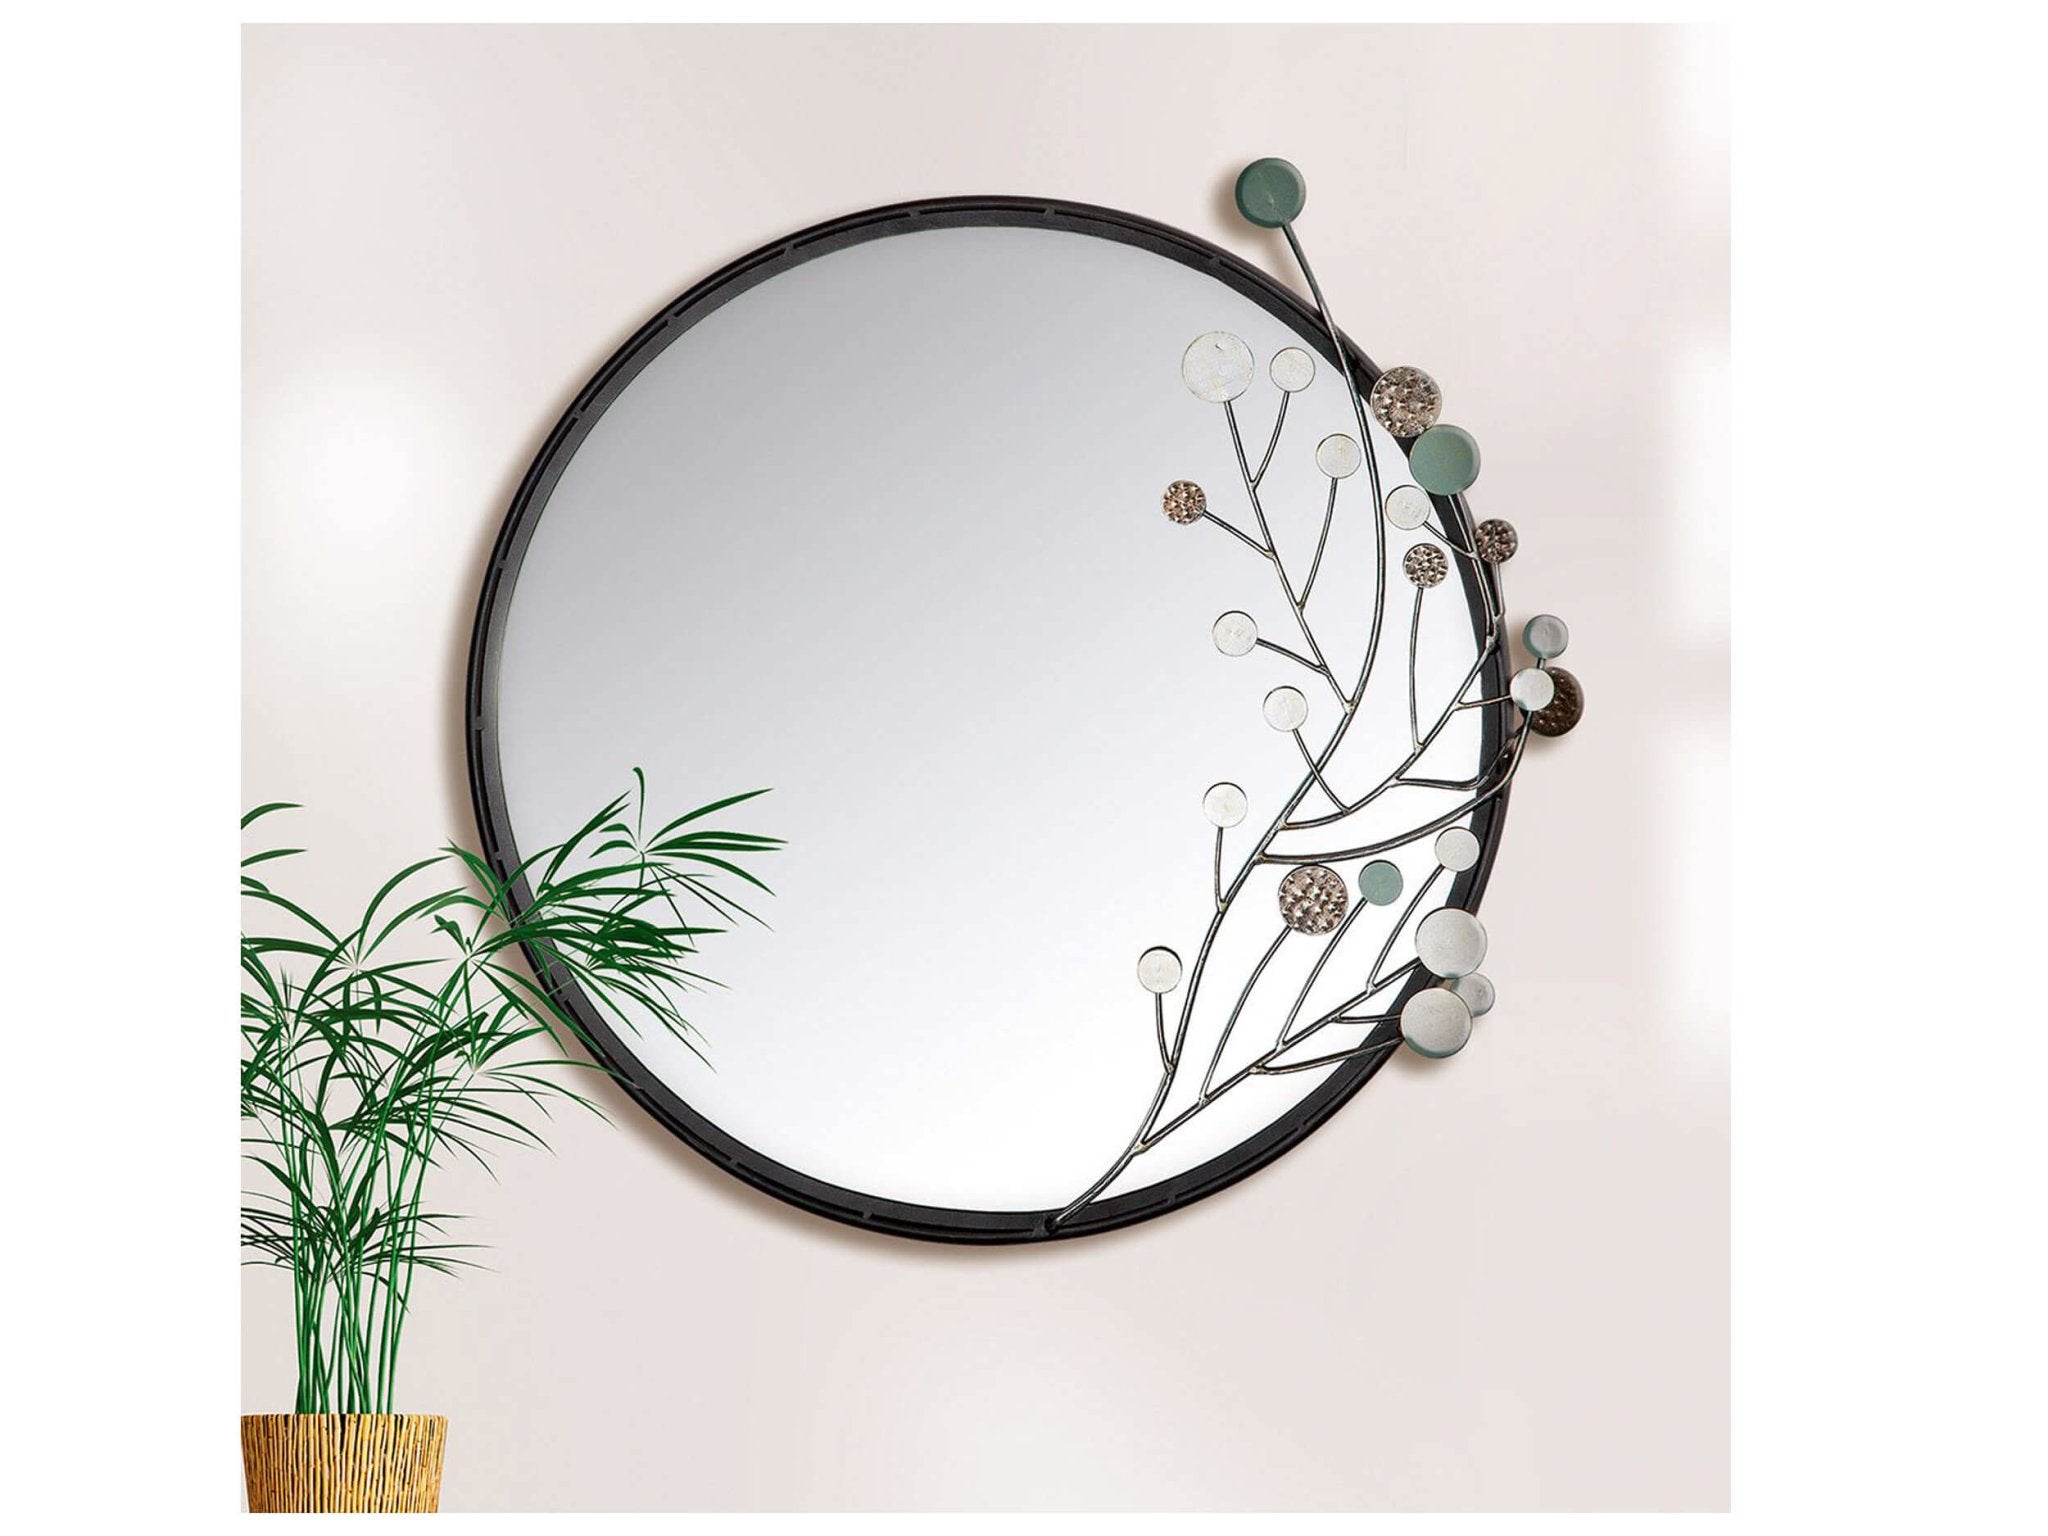 Ronde spiegel diameter 65 centimeter met moderne decoratie en zwarte rand